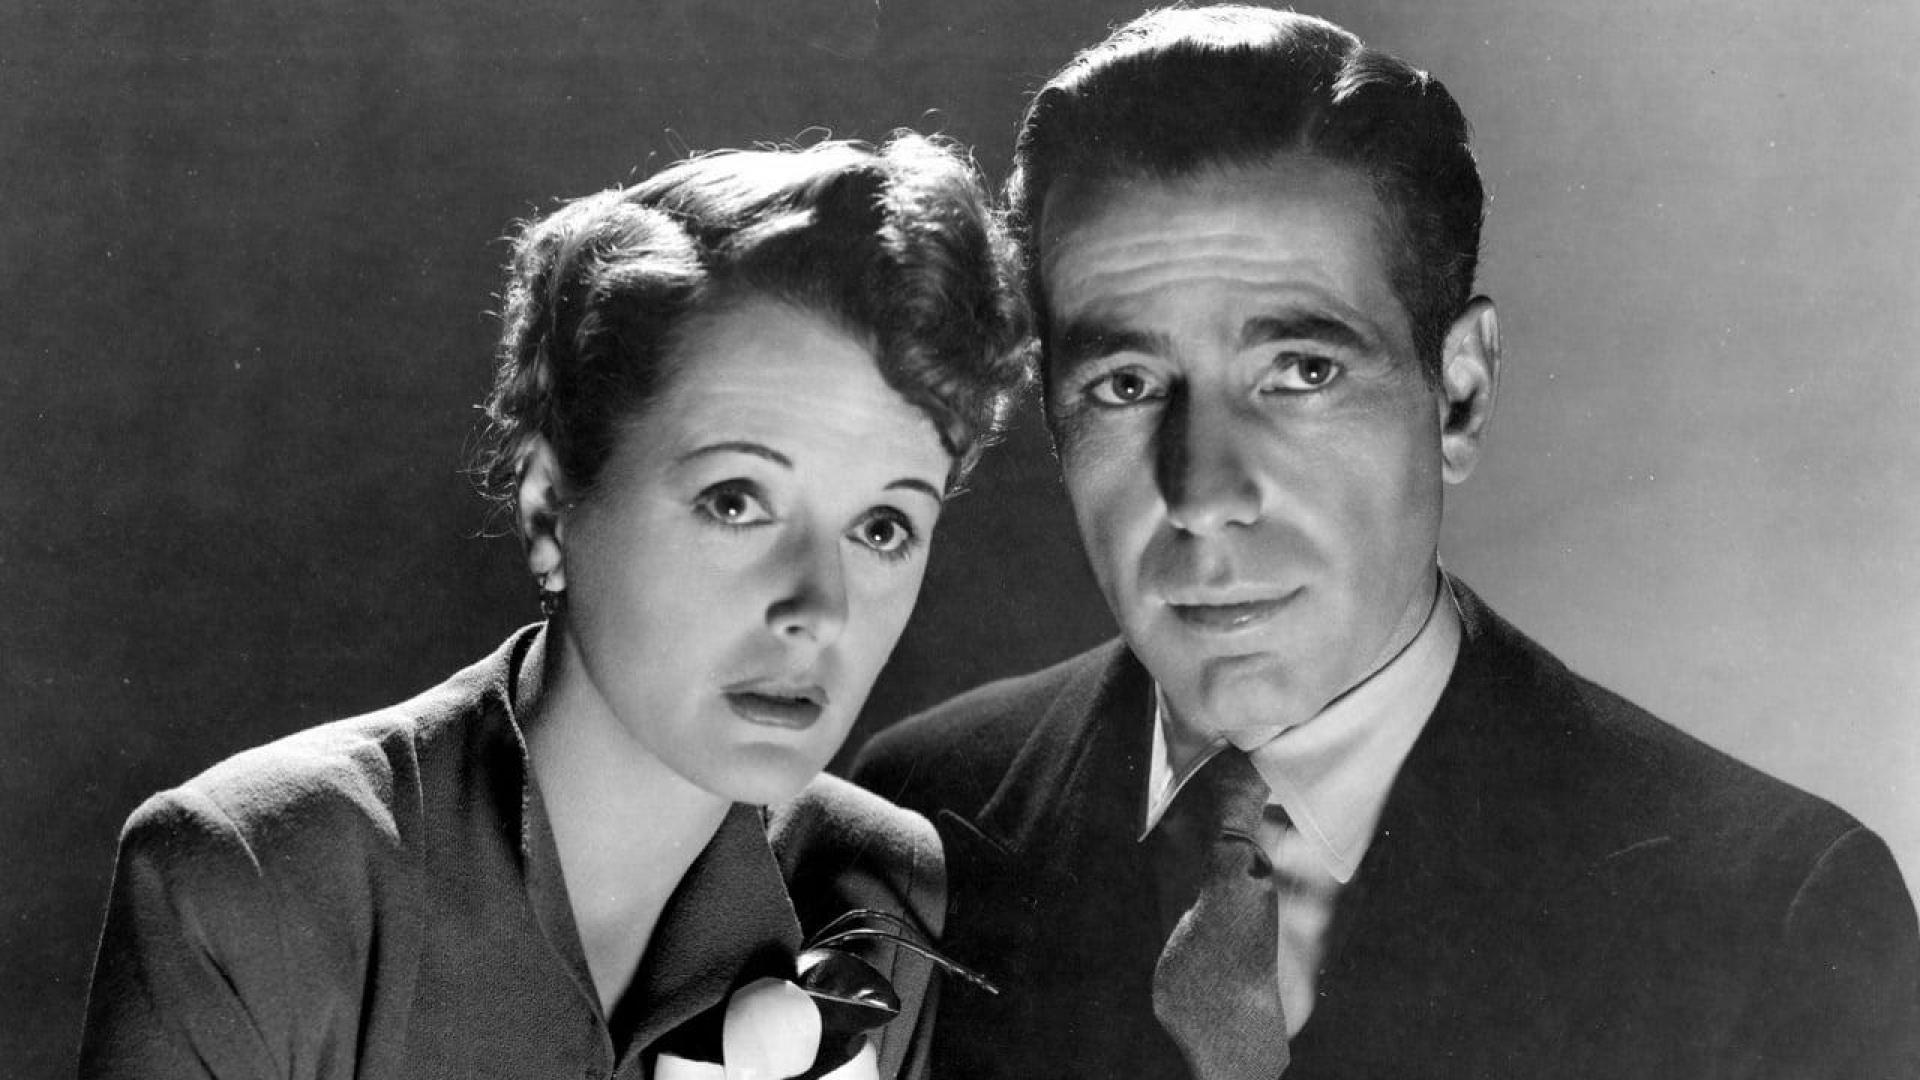 دانلود فیلم The Maltese Falcon 1941